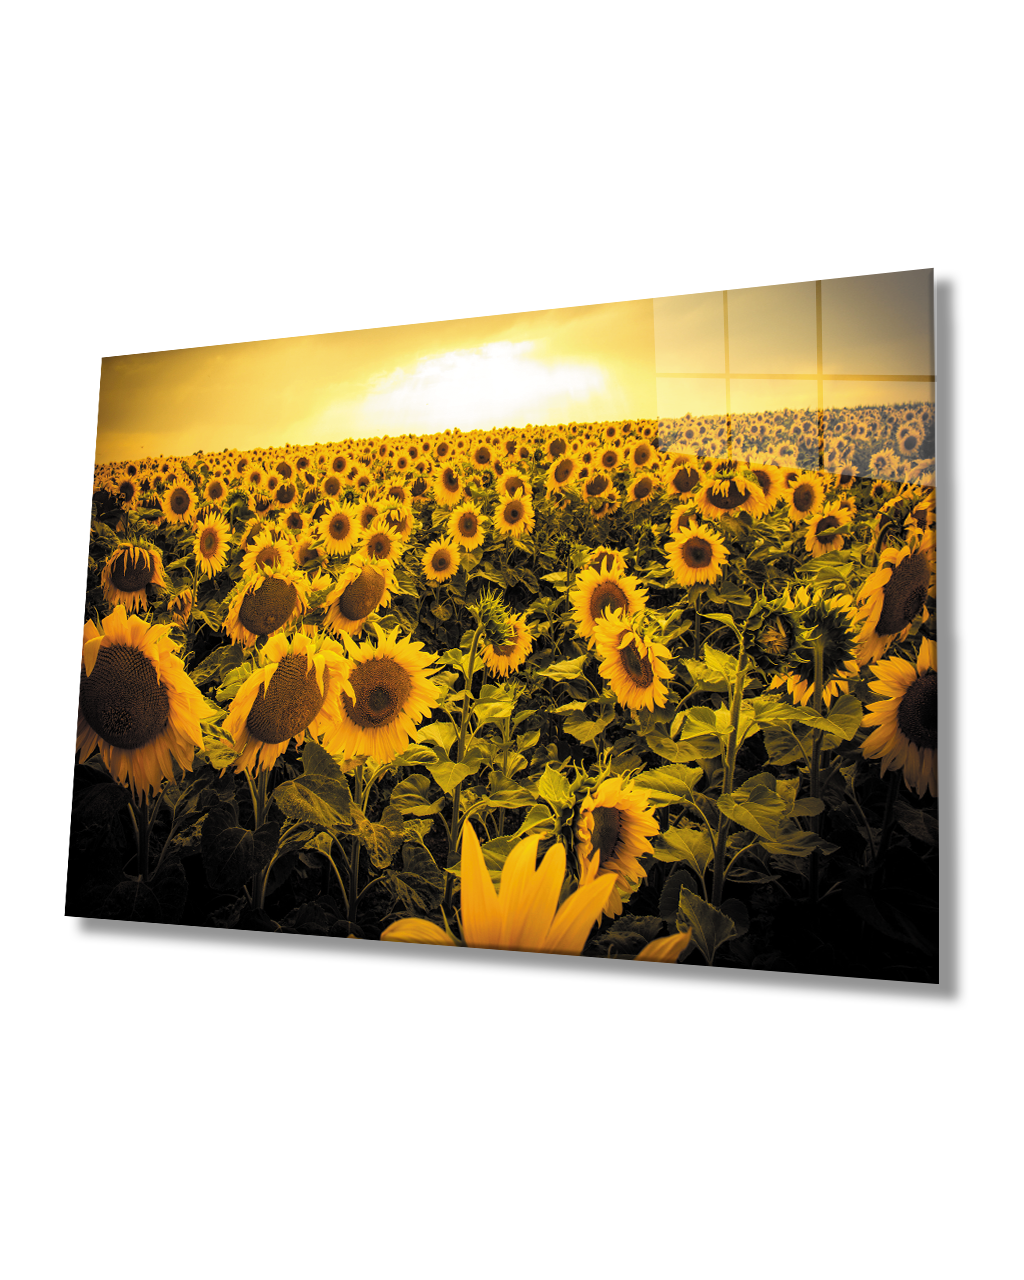 Gün Batımı Manzarası Ayçiçeği Tarlası Sarı Cam Tablo  4mm Dayanıklı Temperli Cam Sunset Landscape Sunflower Field Yellow Glass Table 4mm Durable Tempered Glass